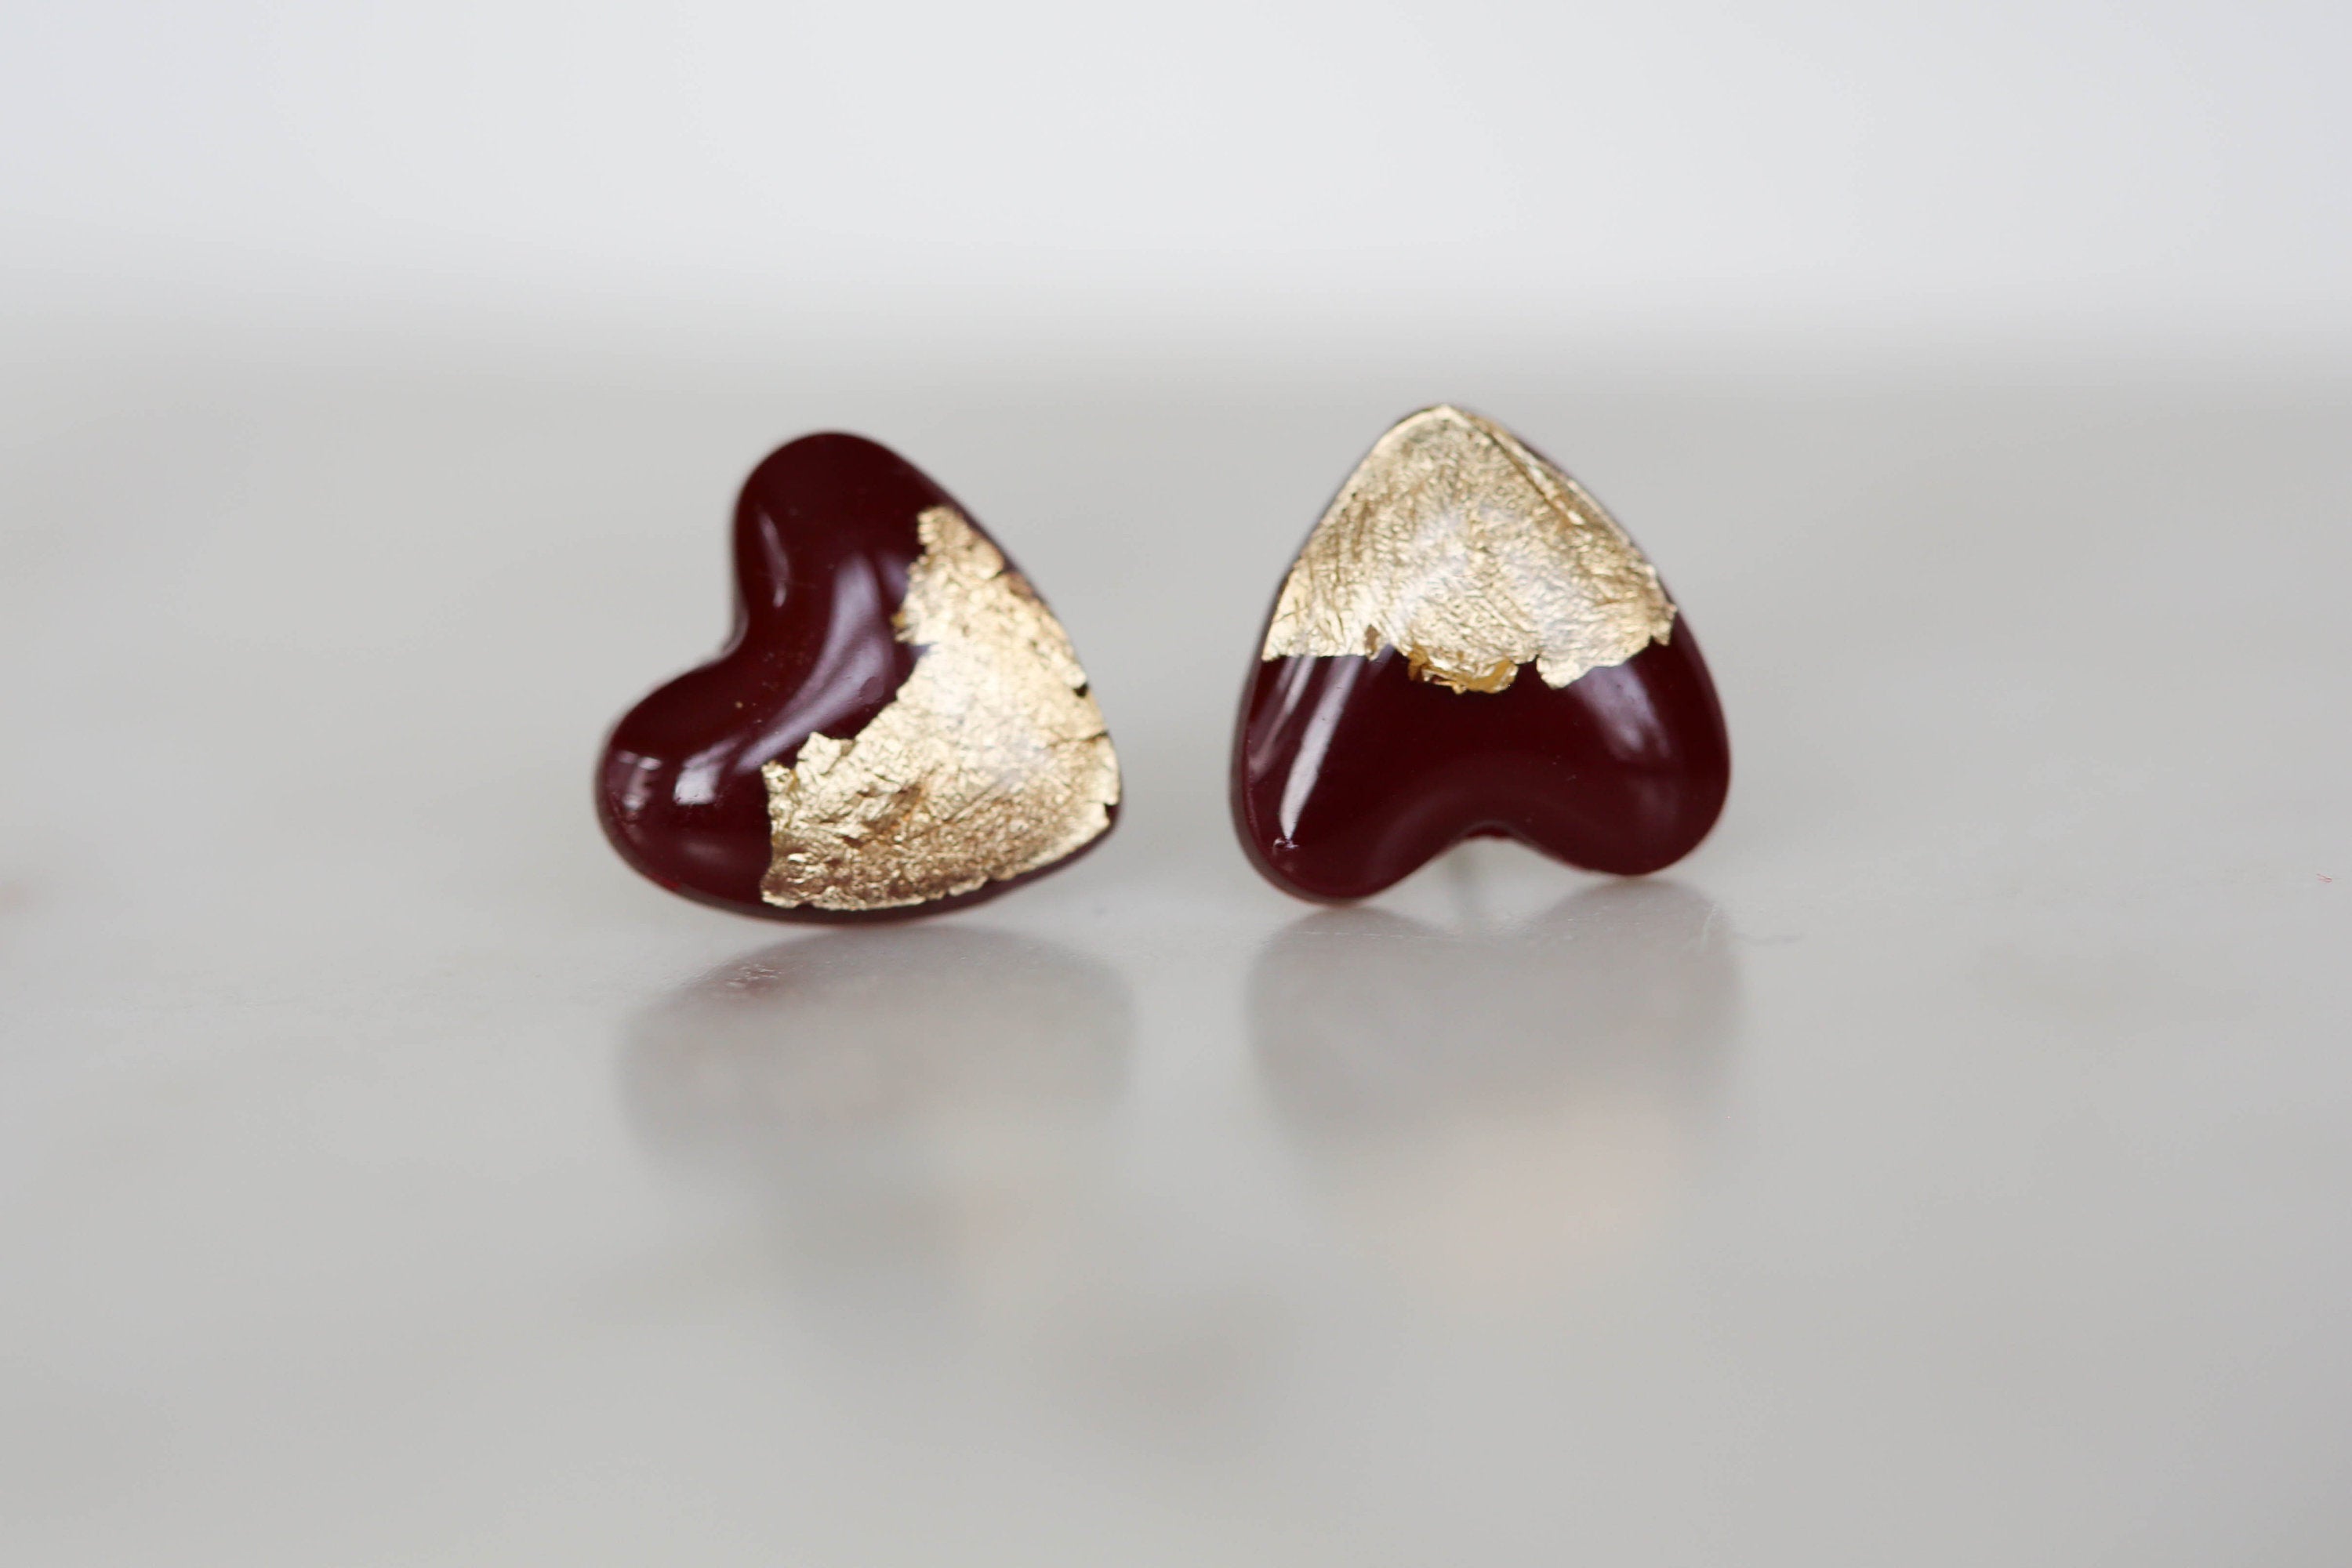 Burgundy heart stud earrings freeshipping - Ollijewelry